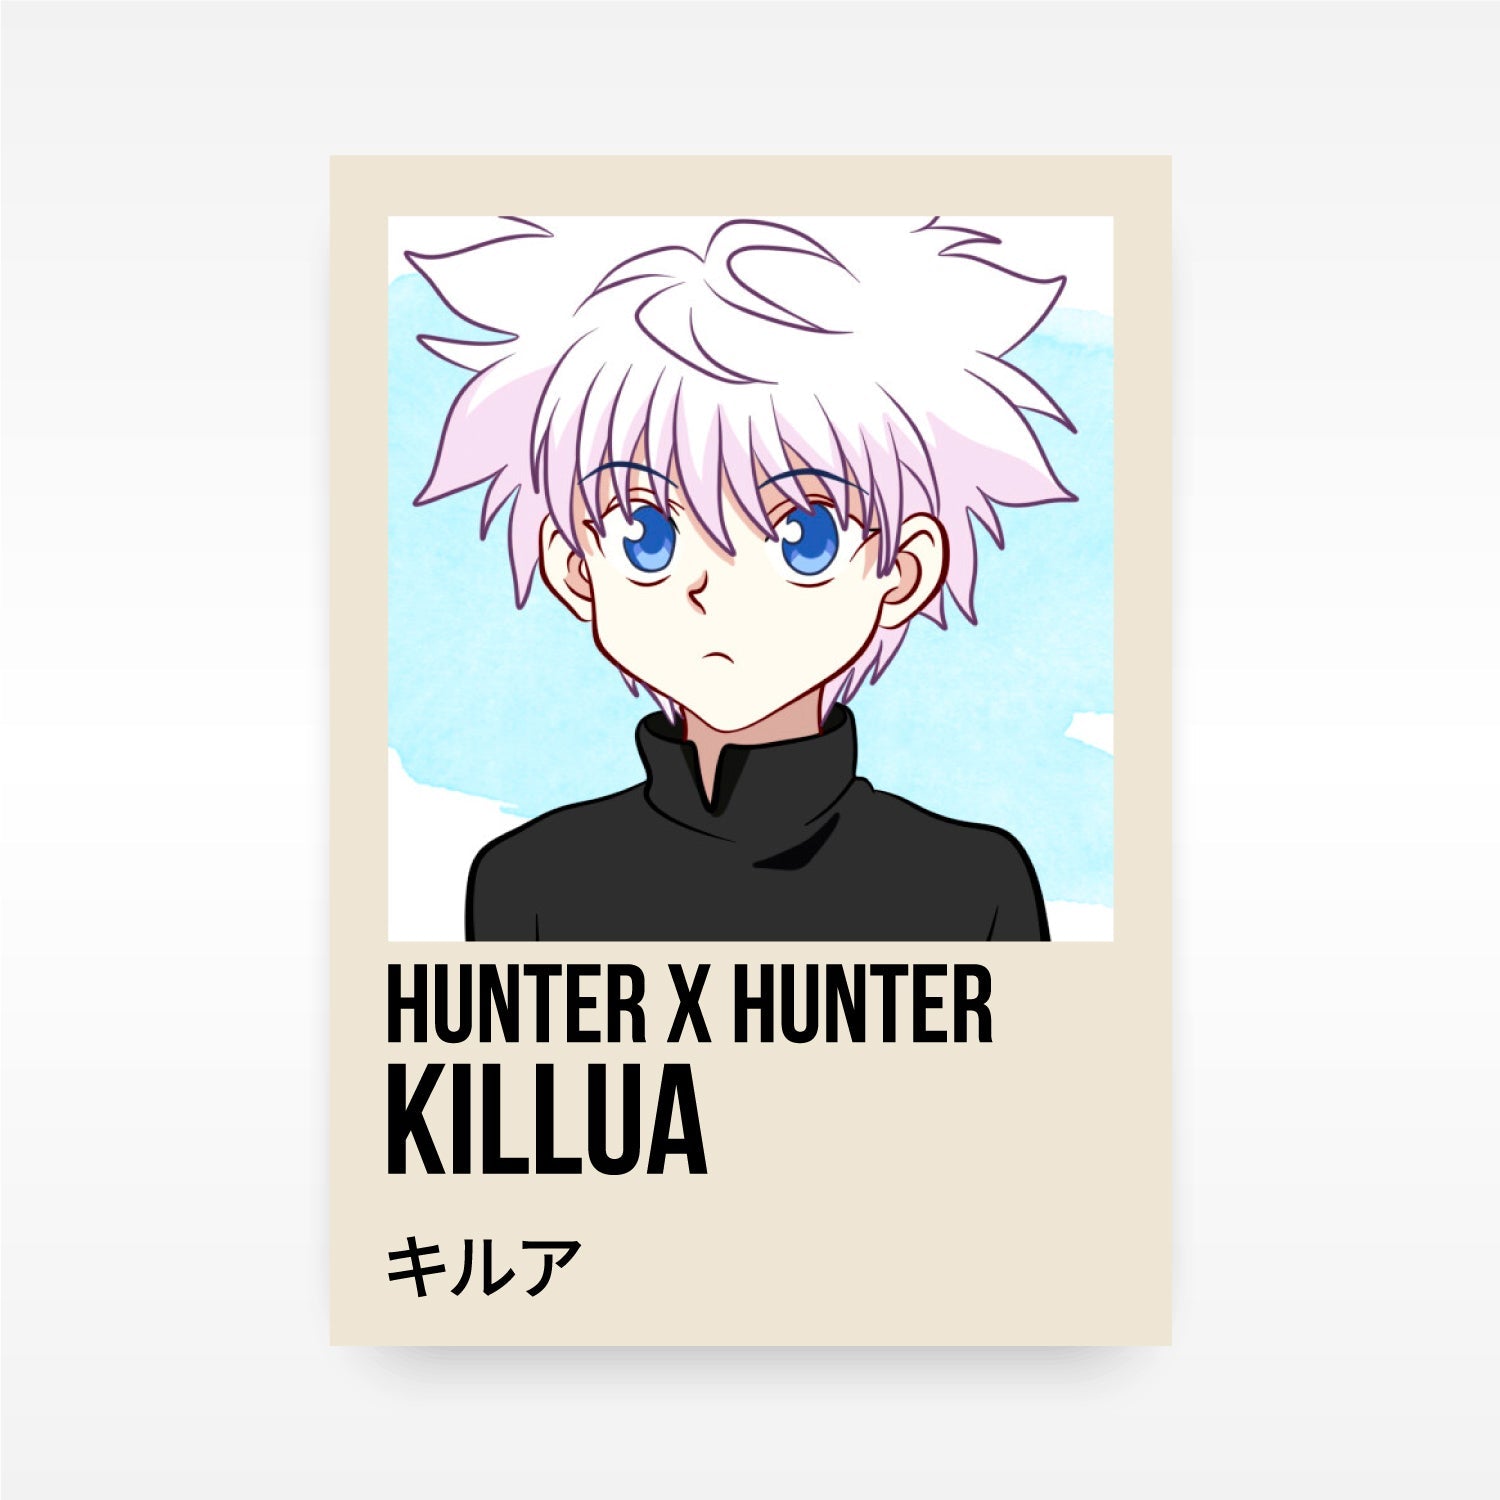 Quais são as diferenças entre o anime e o mangá de Hunter x Hunter